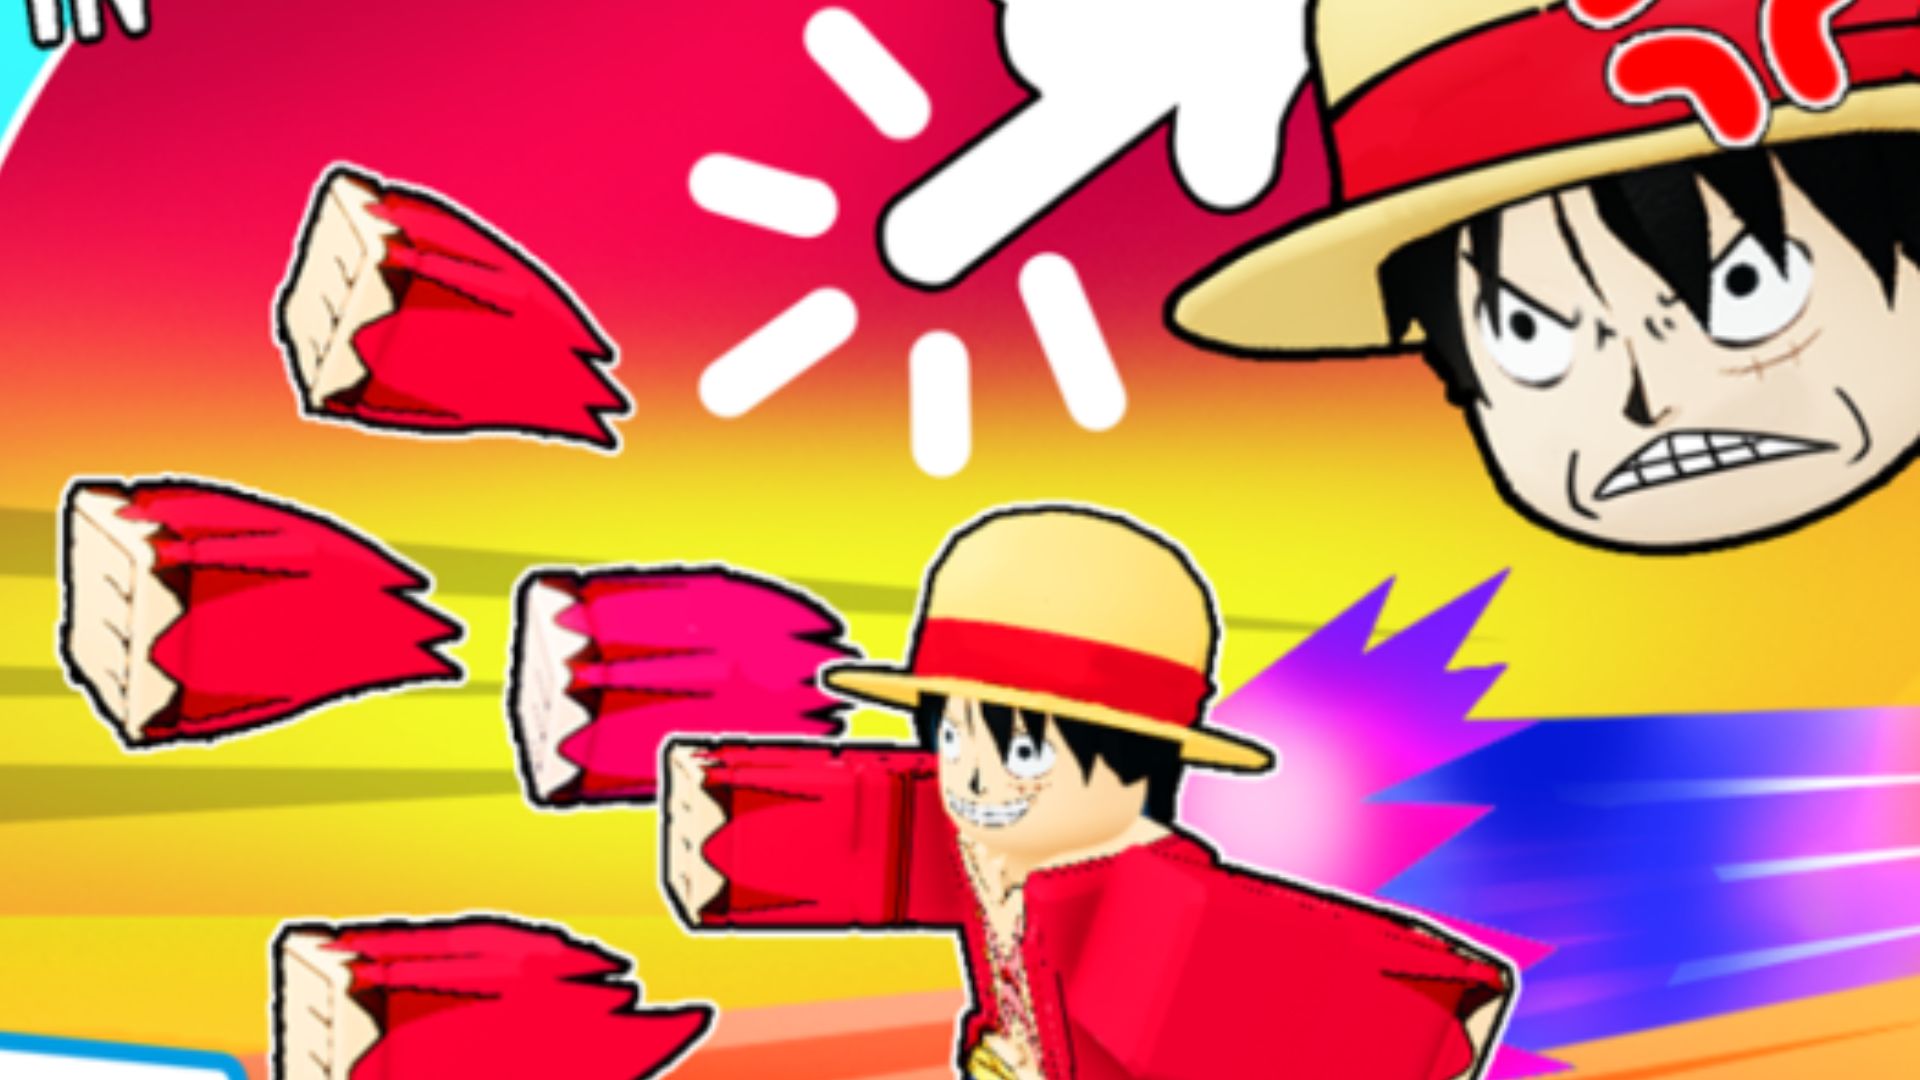 Anime Racing Clicker Codes: Hero, Shuriken, Super Lucky, & More